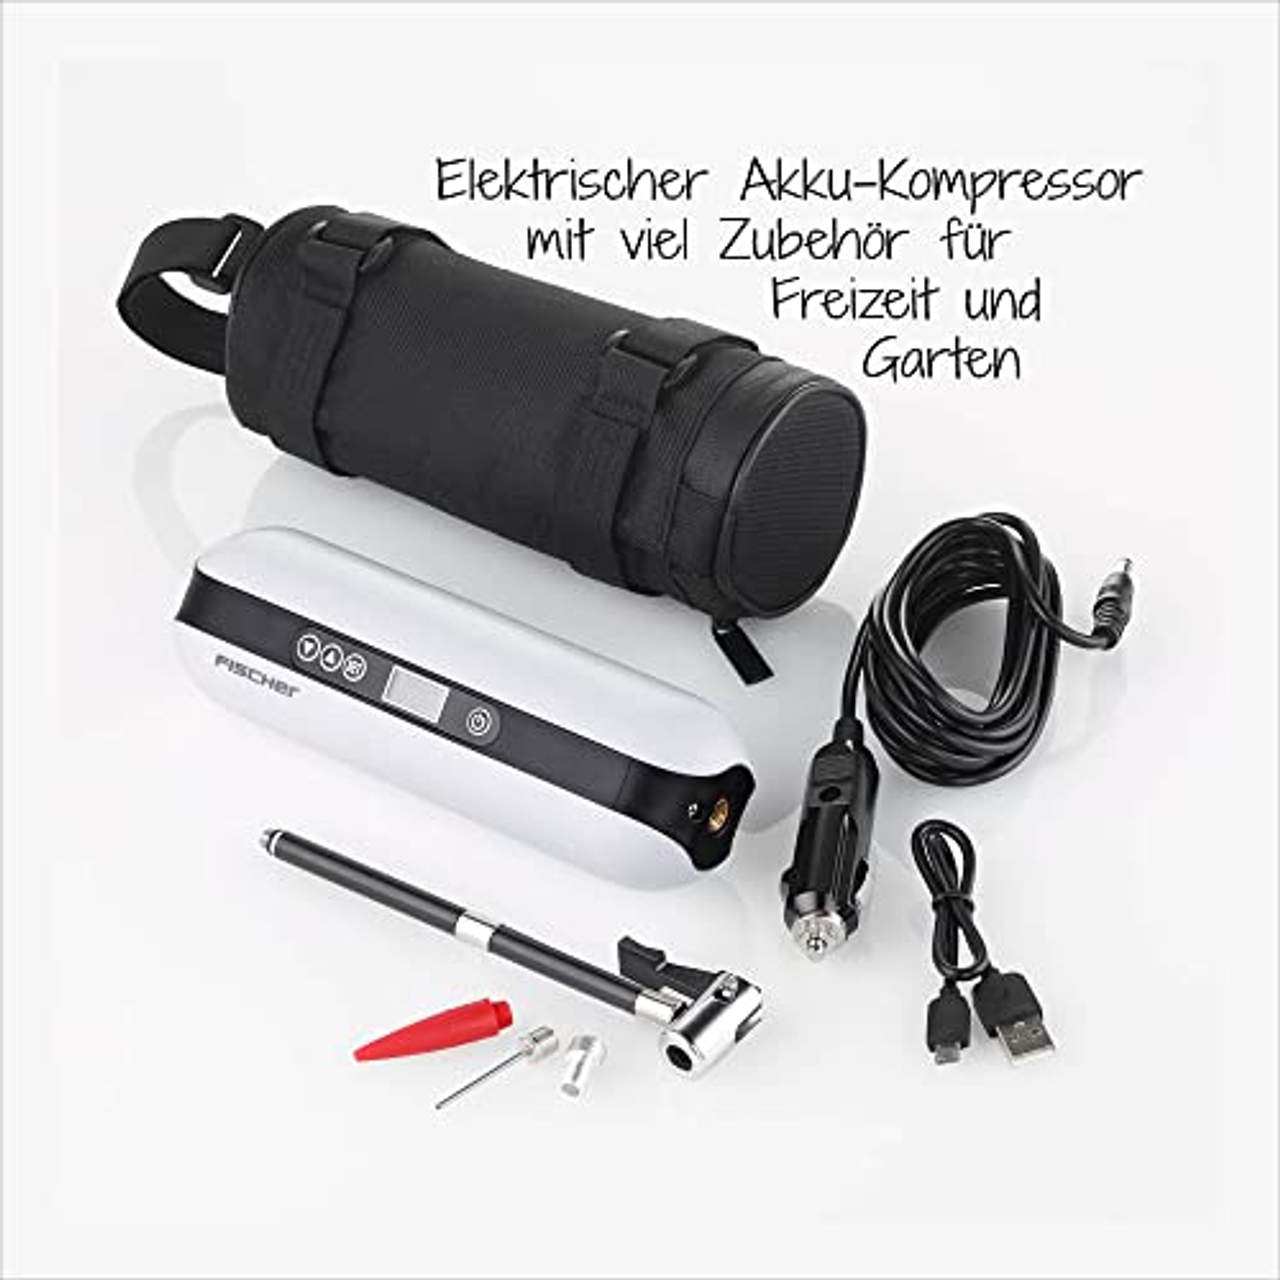 Fischer Akkukompressor elektrische Luftpumpe 10,3 Bar